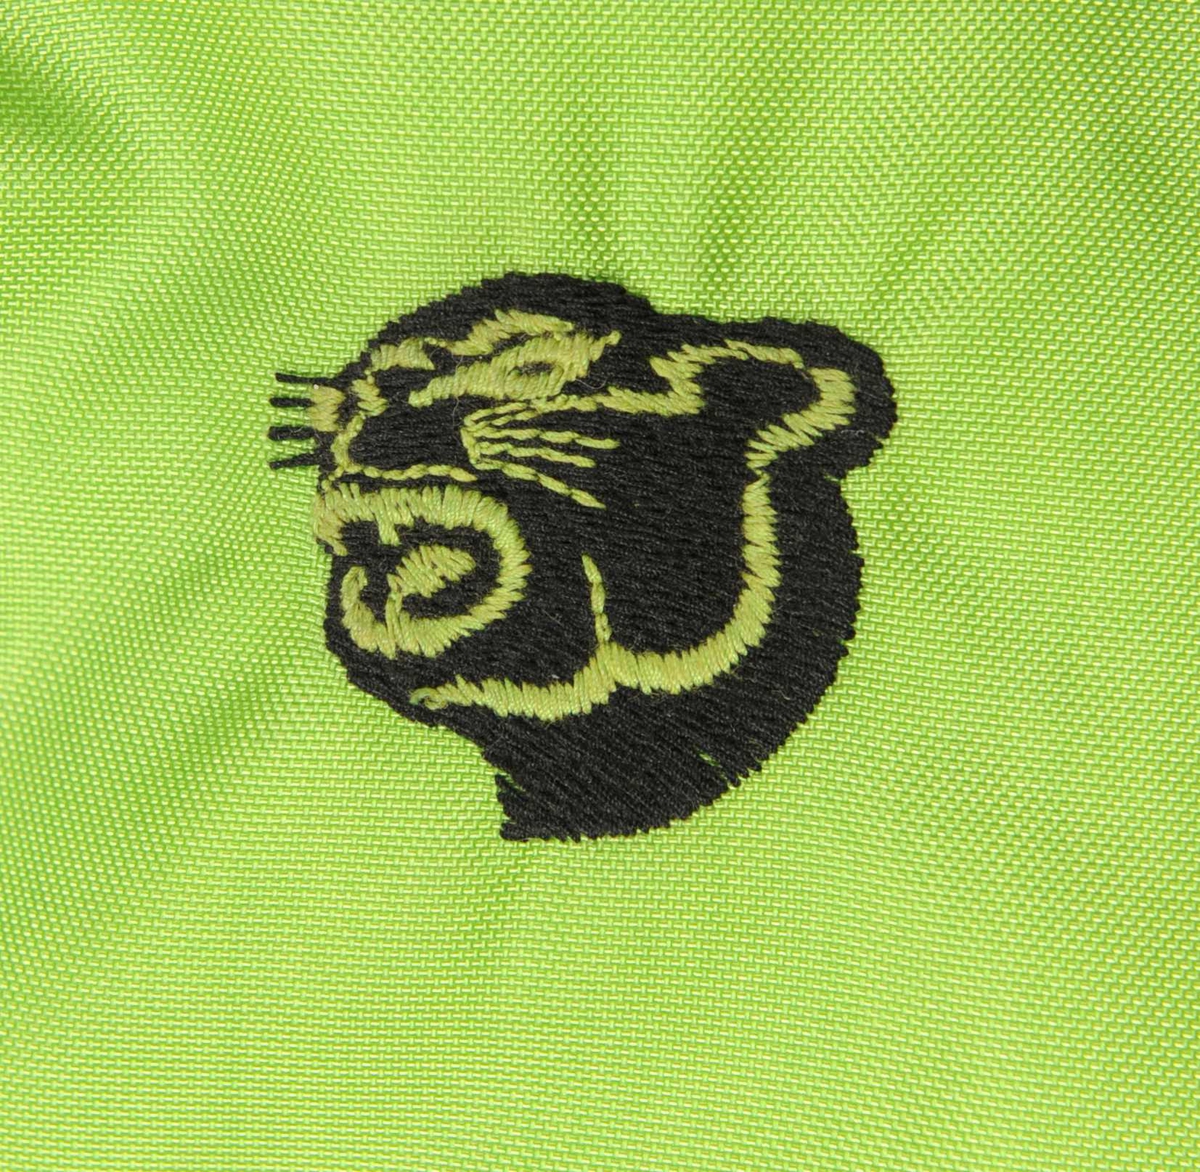 Dress av syntetisk stoff i fargene grønt, svart og hvitt. Halsen og enden på ermene er av et strikket stoff. Dressen lukkes ved hjelp av en glidelås og et belte. Det er to lommer. Det er et tekstilmerke med brodert kattehode på venstre siden under skulderen.